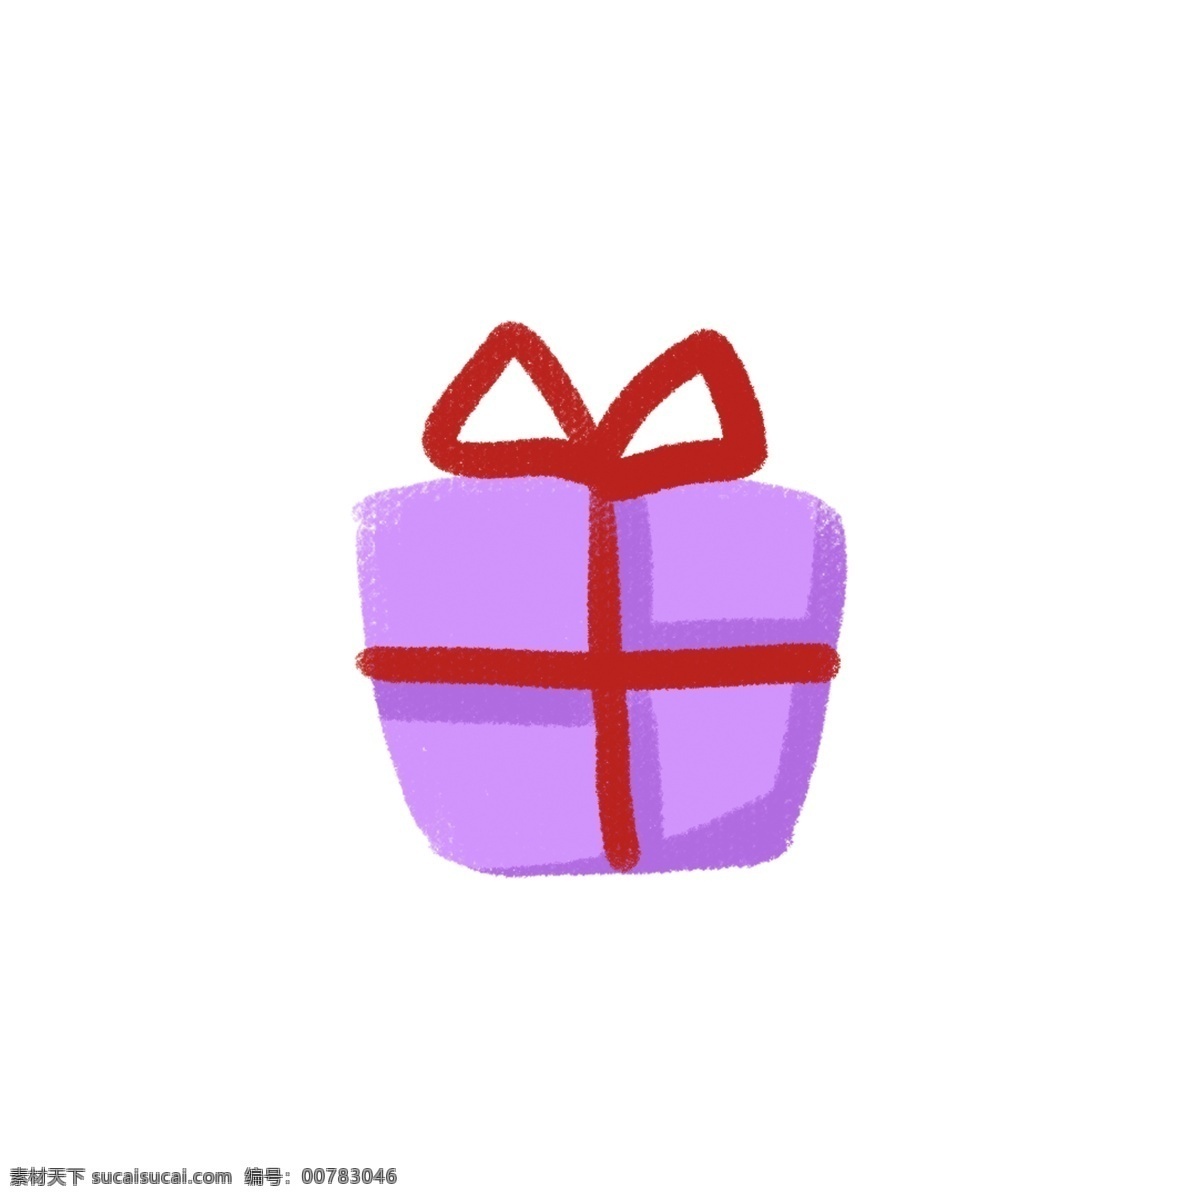 卡通 紫色 礼物 盒 免 抠 蝴蝶 礼物盒 紫色礼物 礼物免抠 杂技 欢快 欢乐马戏 喜气 马戏 插画 卡通礼物盒